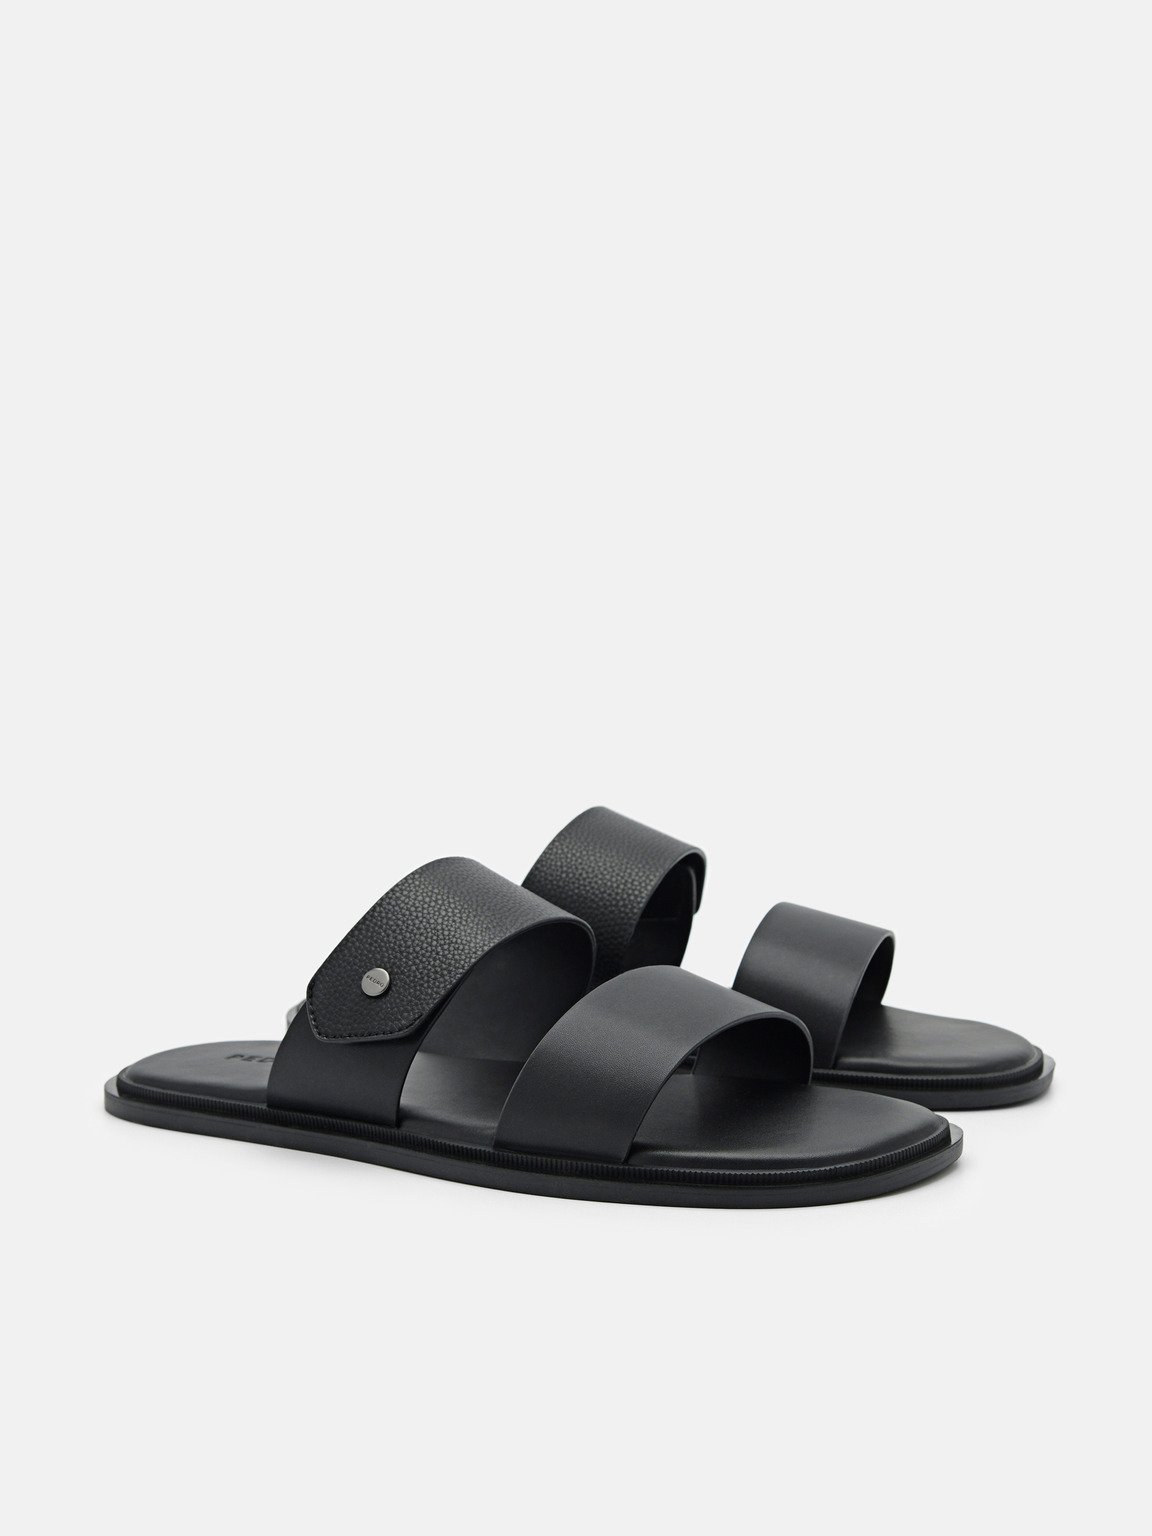 Oliver Slide Sandals, Black